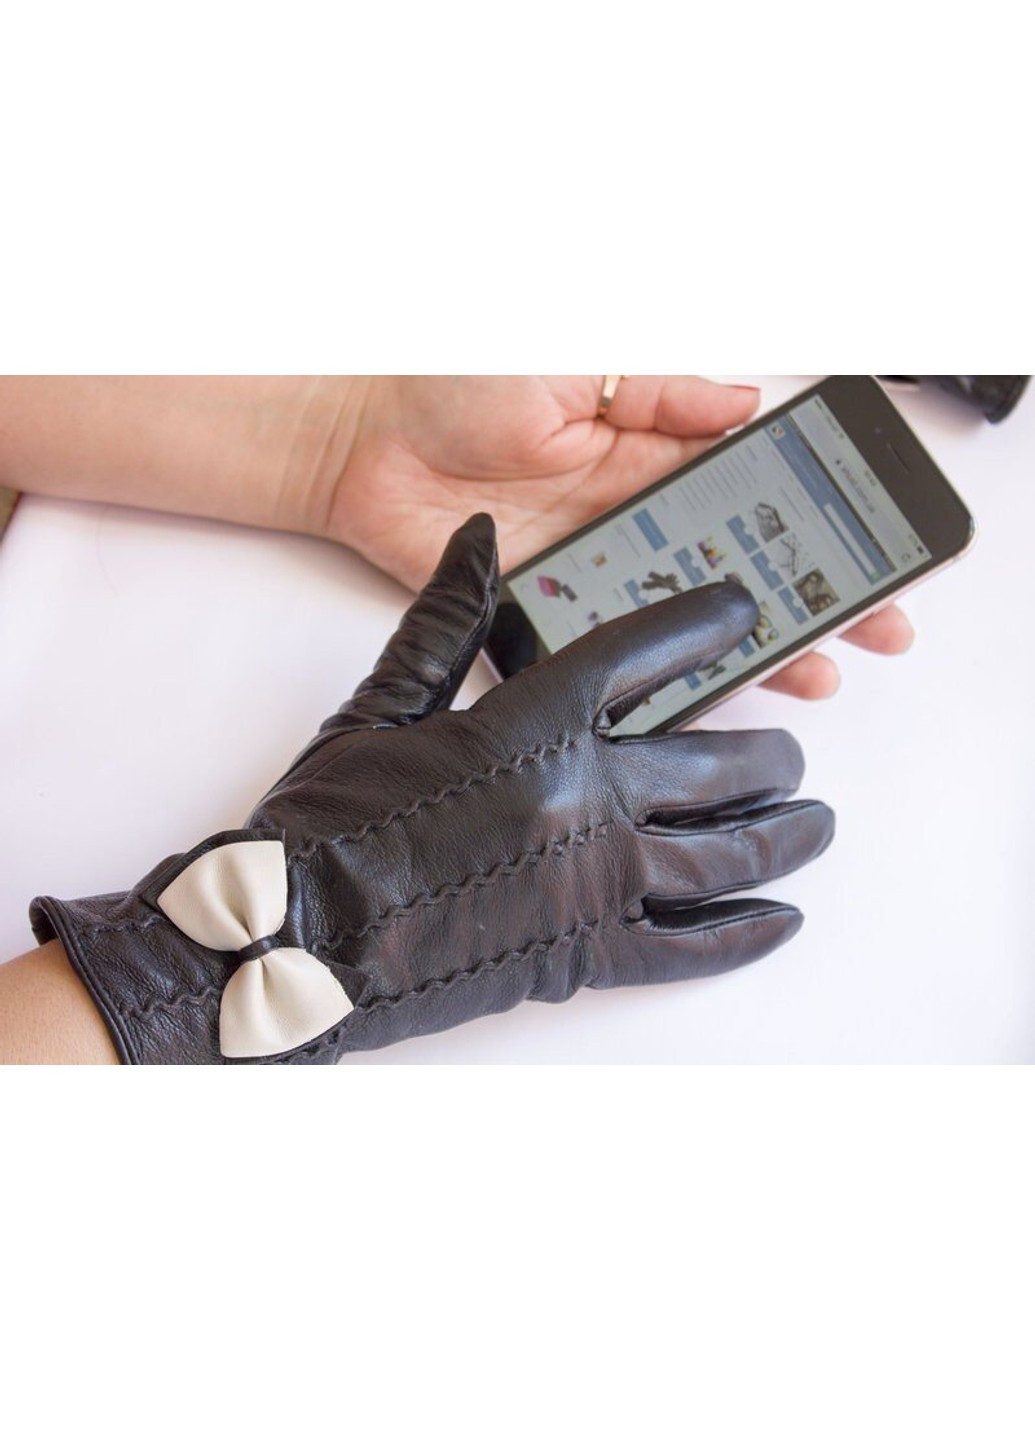 Женские сенсорные перчатки 380 Shust Gloves (266143012)